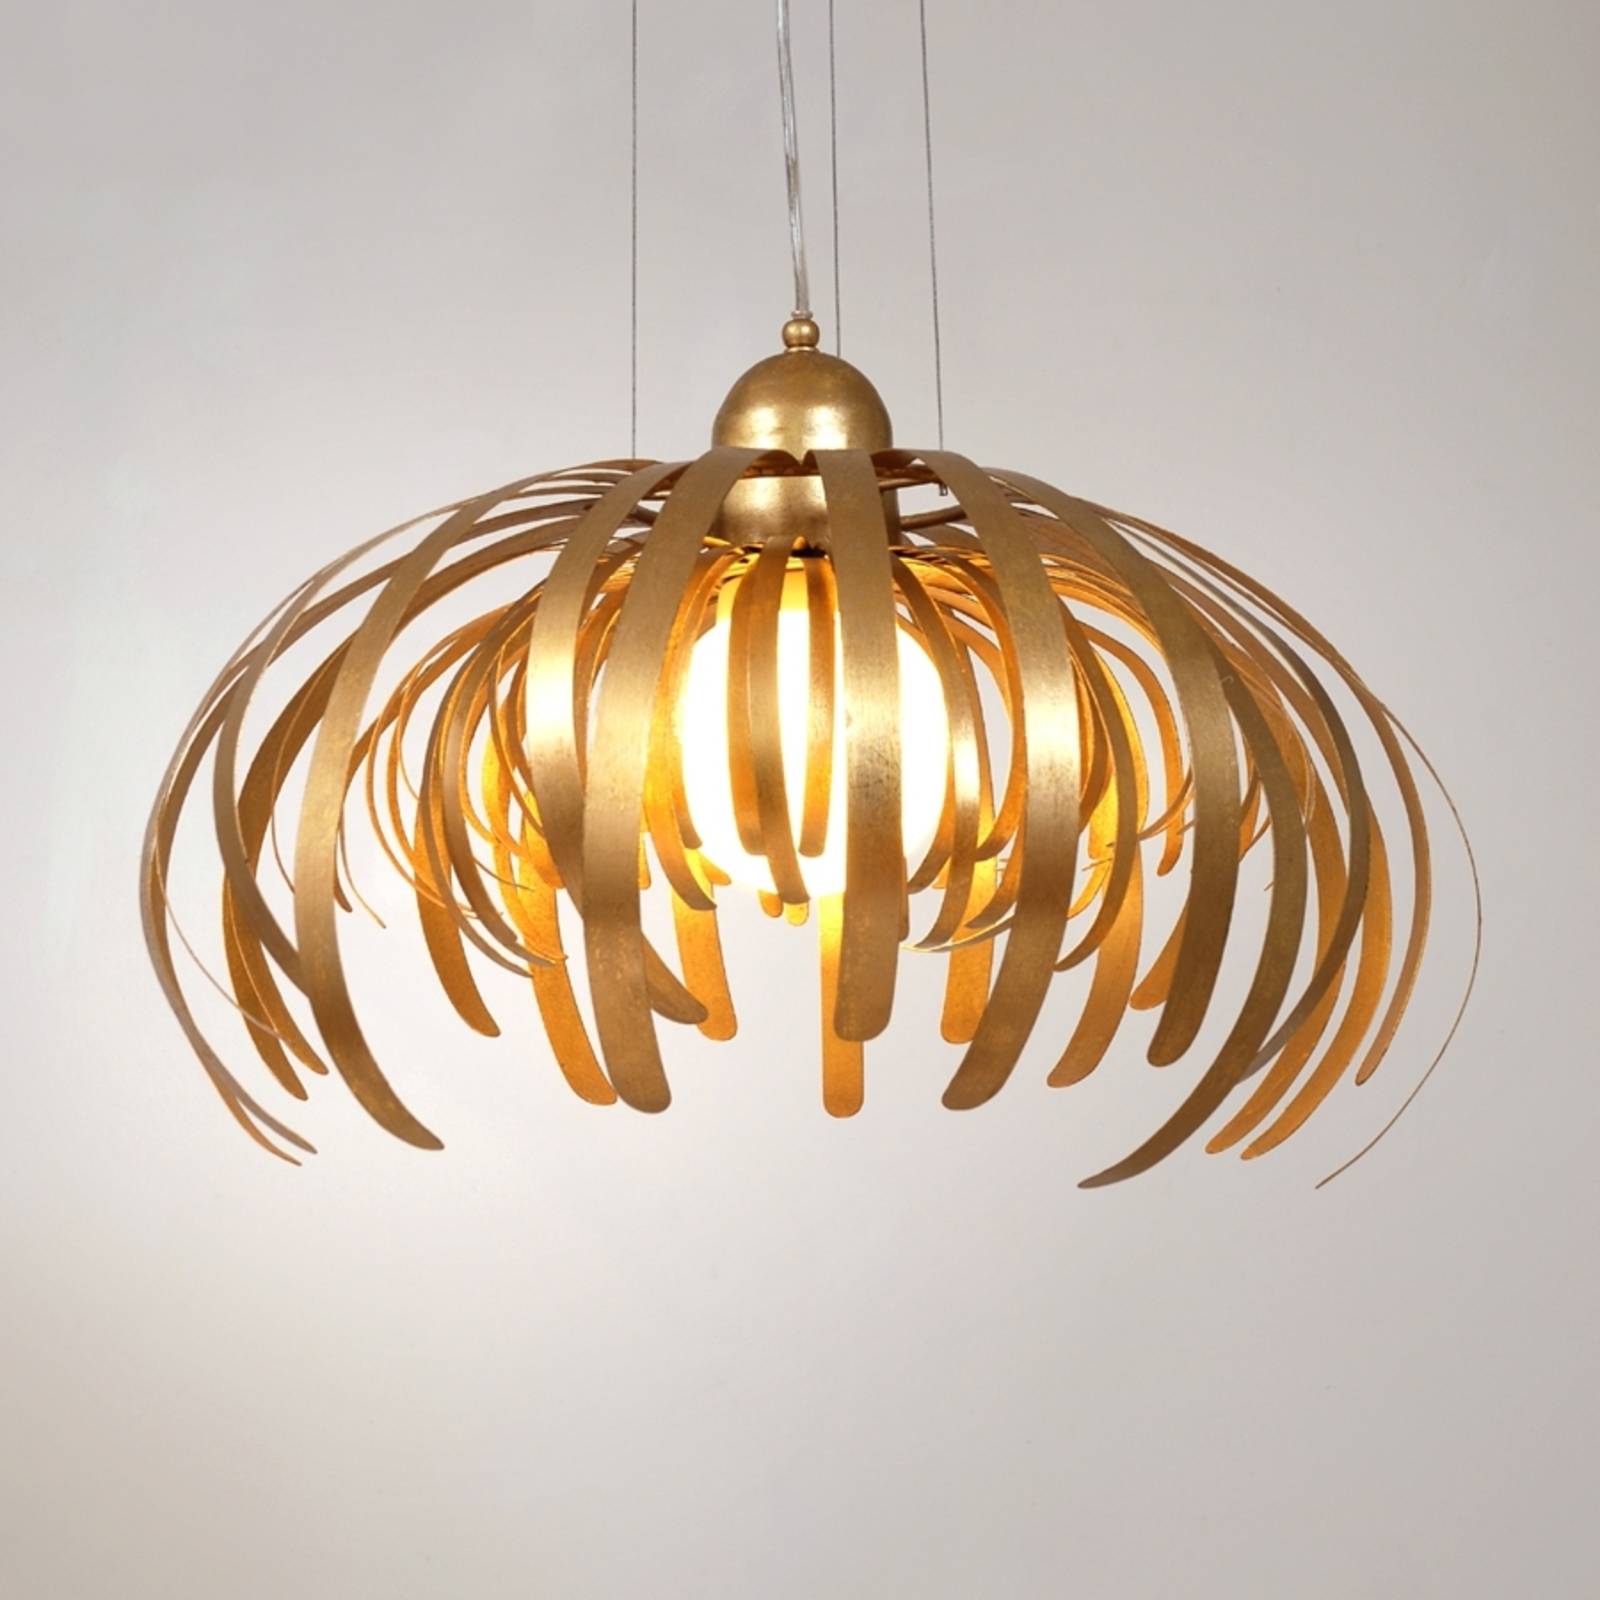 Holländer alessia - egy fantasztikus, arany függő lámpa